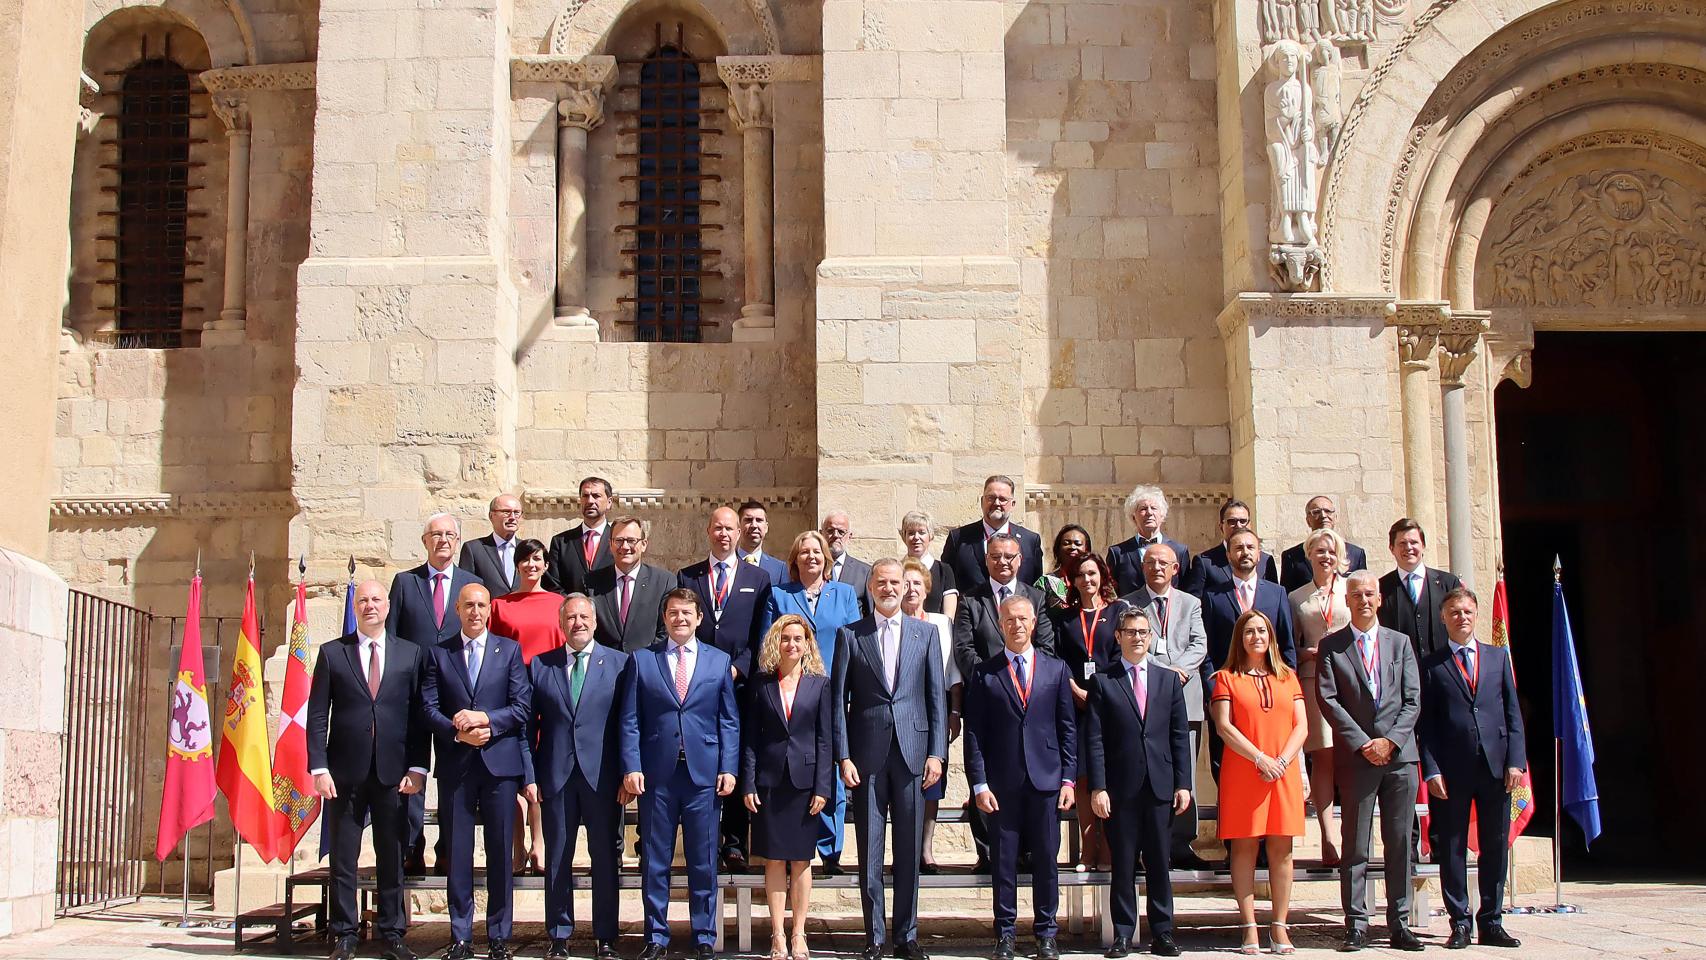 El rey Felipe VI inaugura la Conferencia internacional ‘Reforzar la democracia fortaleciendo a los parlamentos’